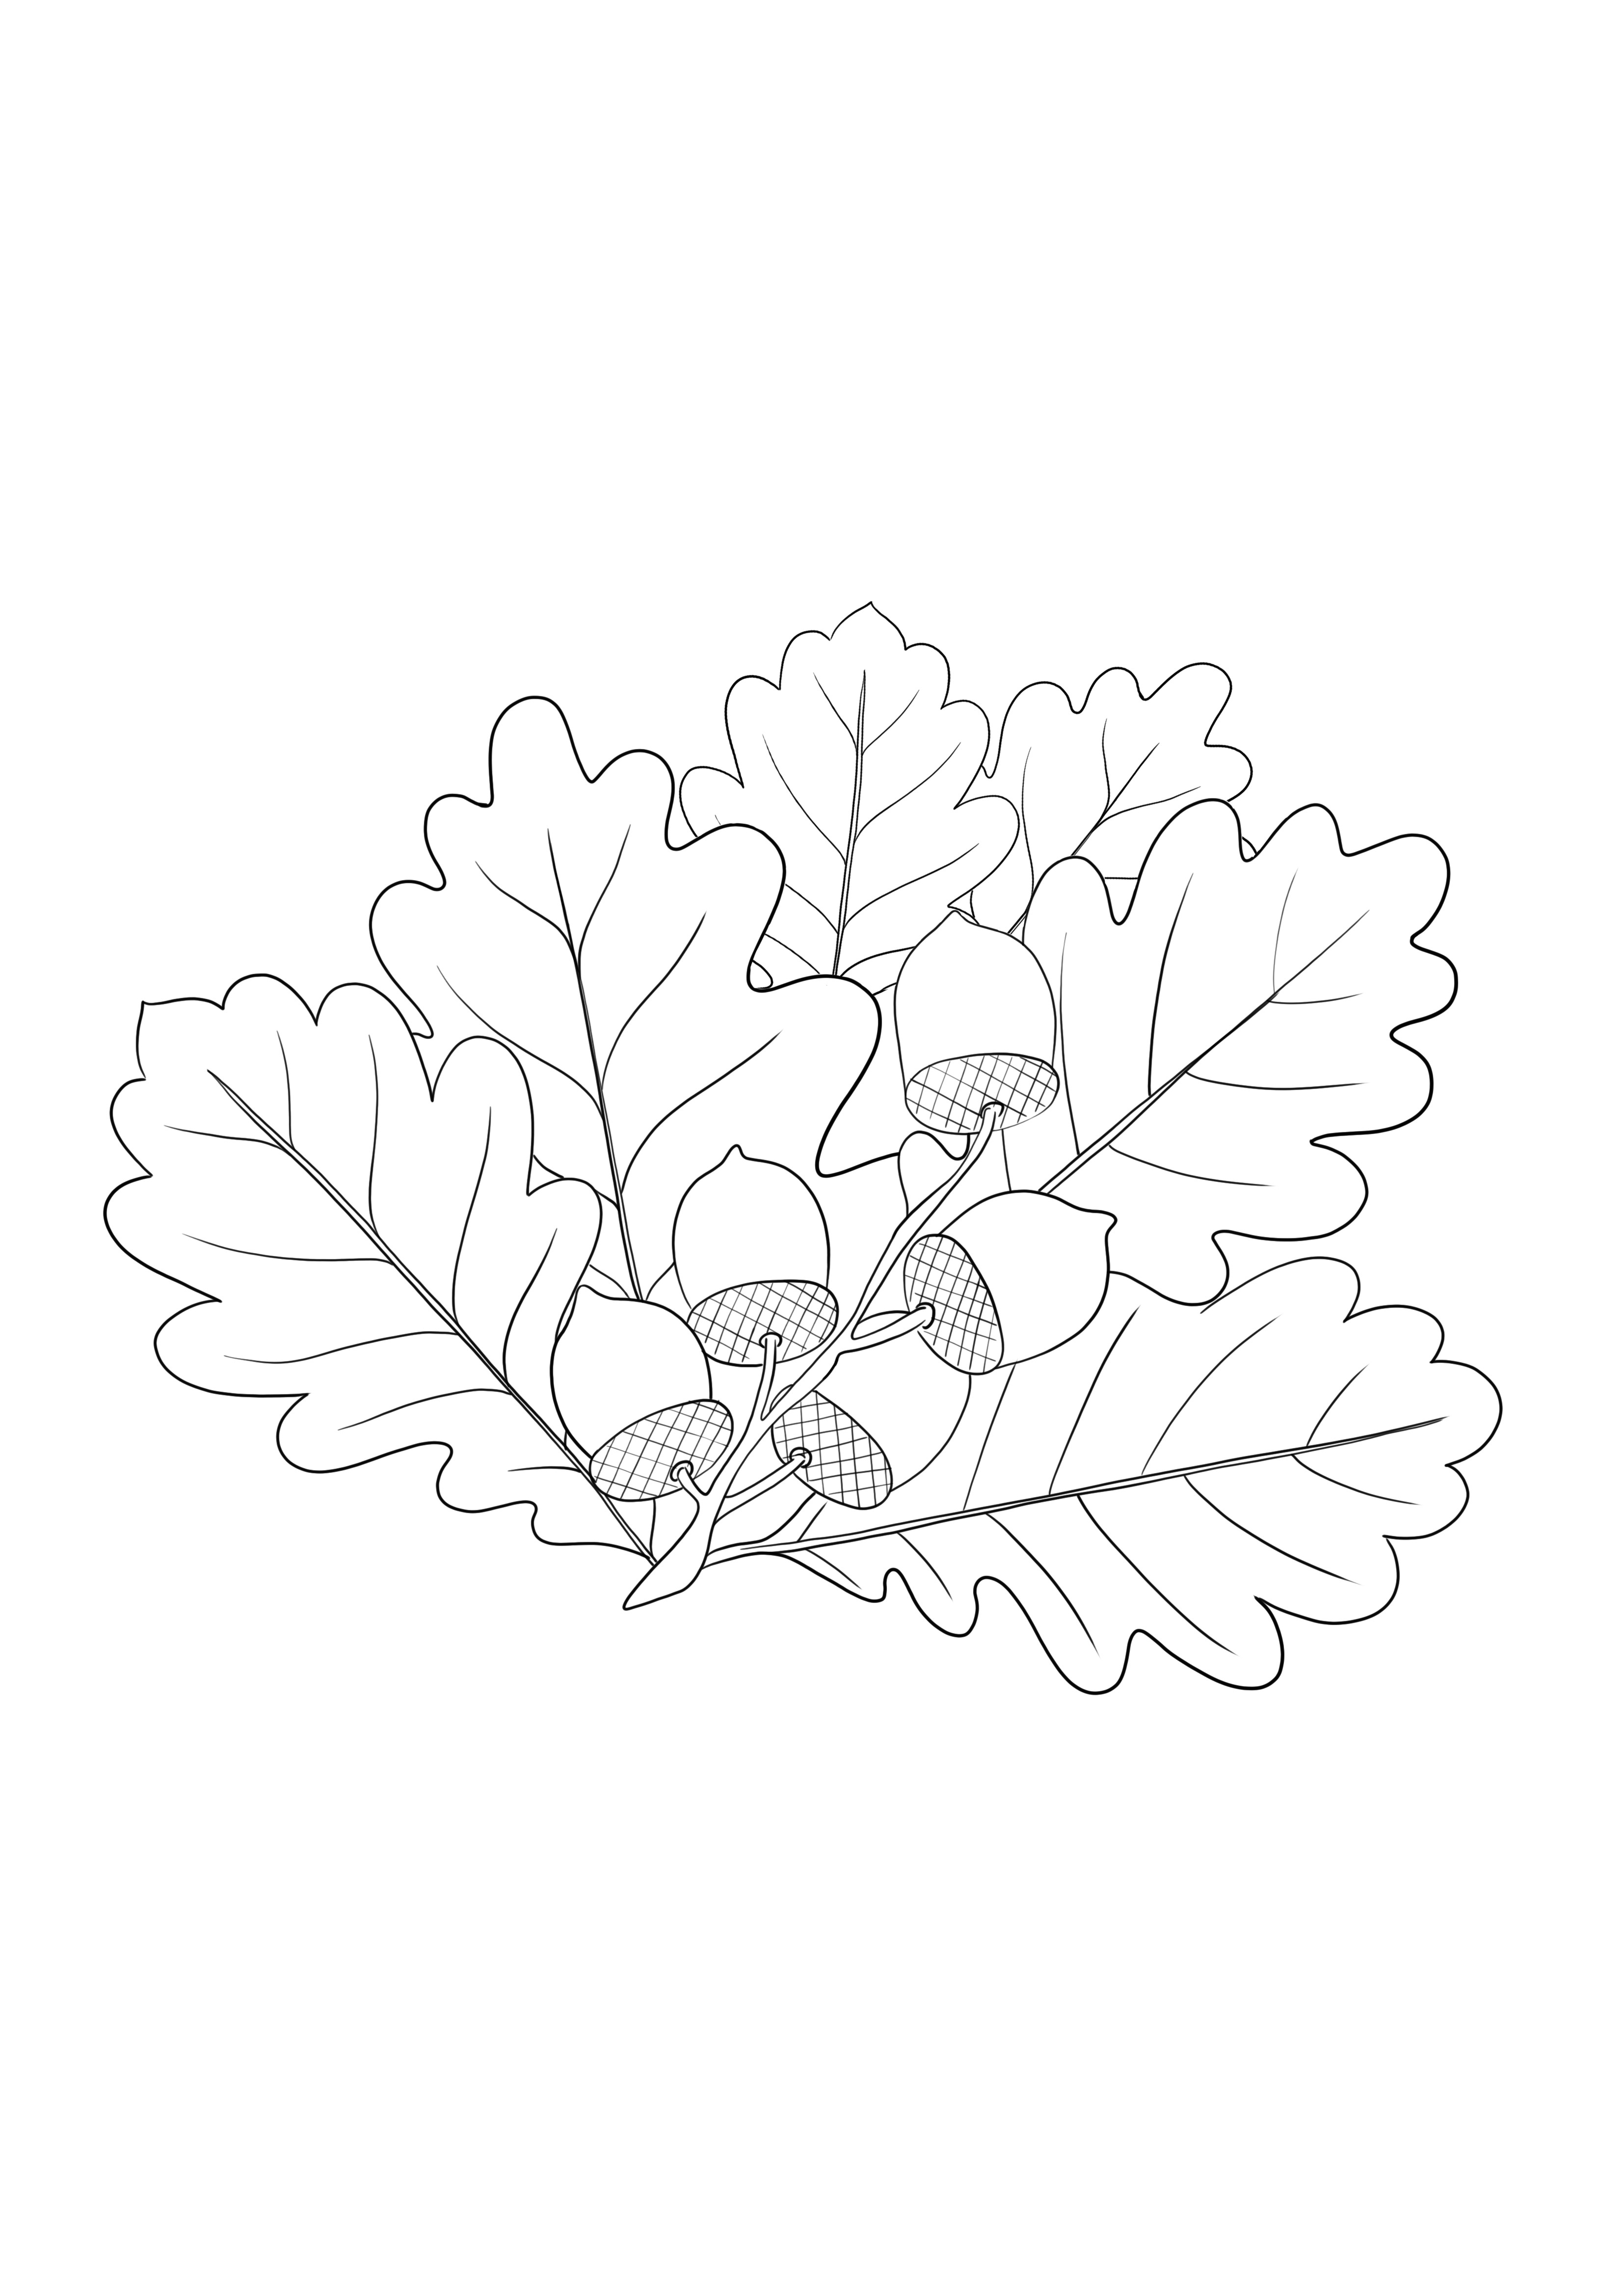 Ramo de carvalho - folhas e bolotas grátis para baixar e colorir a imagem